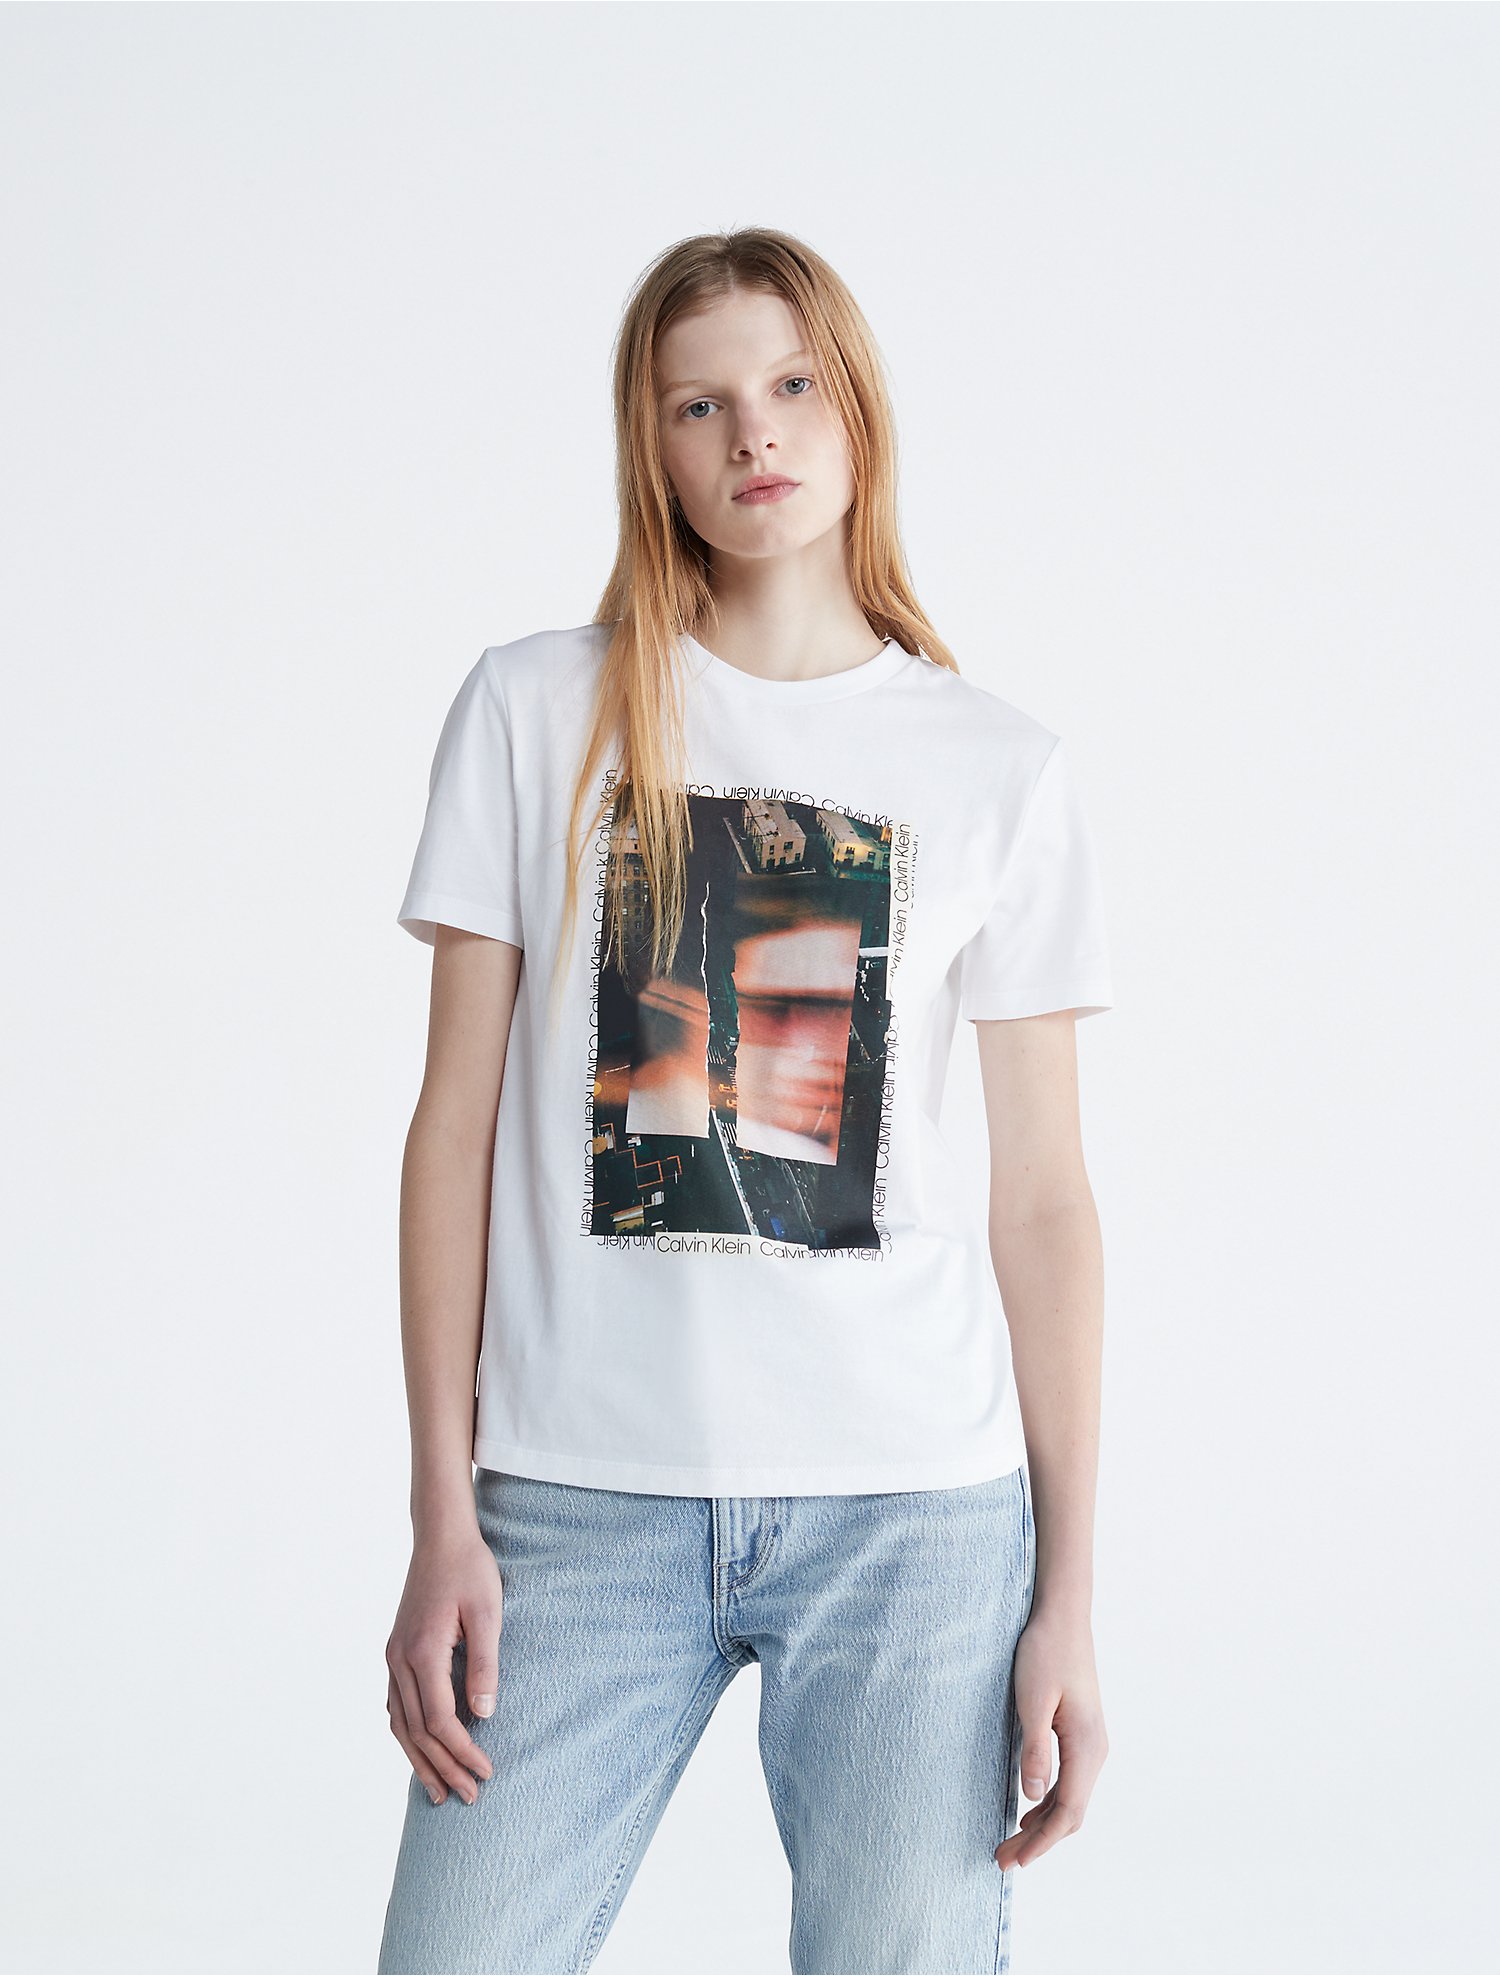 geestelijke daar ben ik het mee eens bladerdeeg Layered City Graphic Crewneck T-Shirt | Calvin Klein